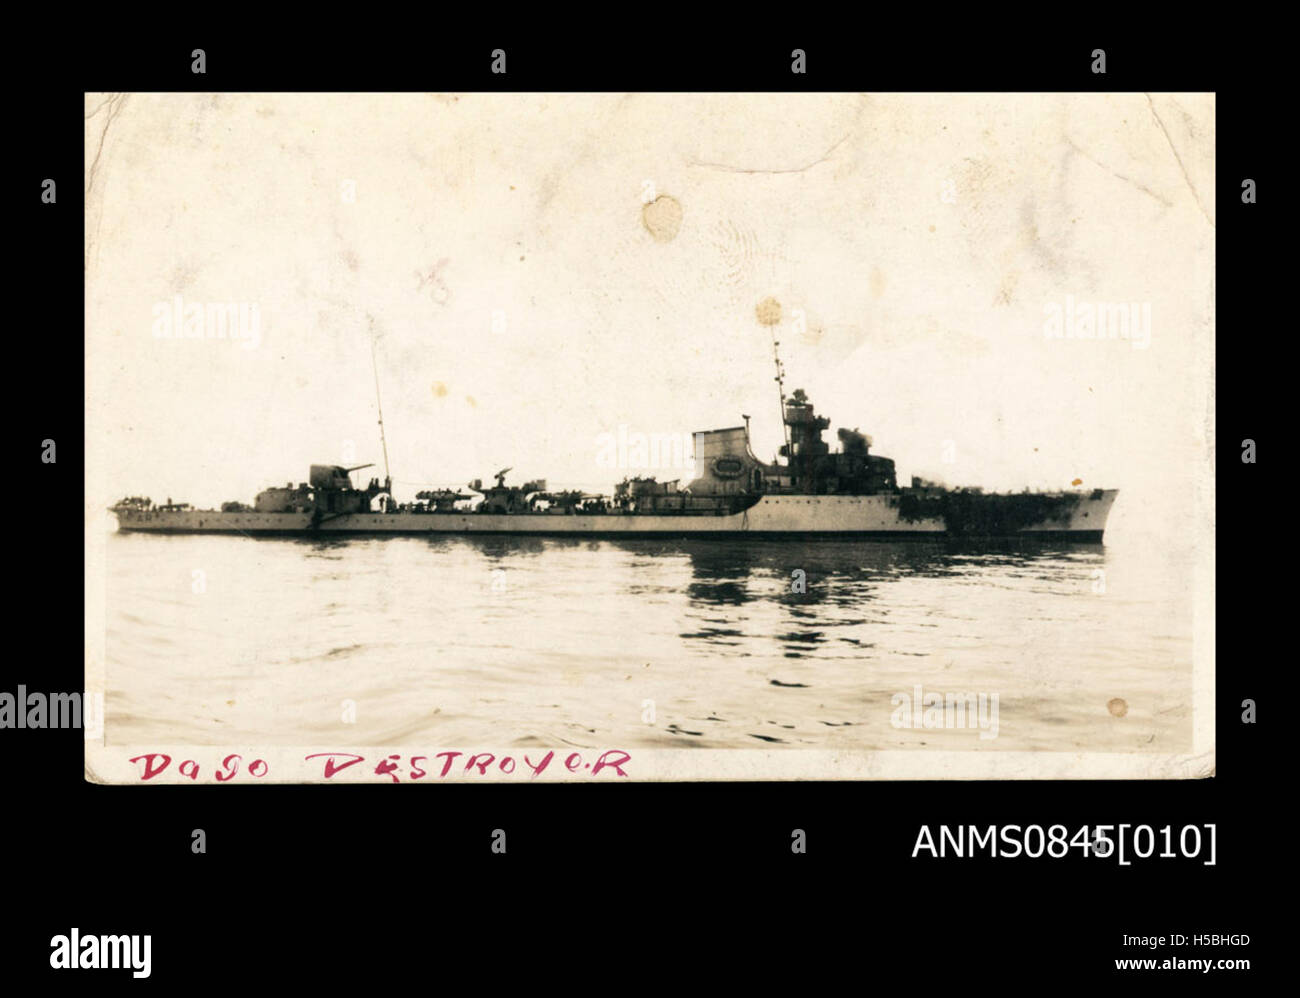 3 HMAS SYDNEY (II) en una batalla naval con un destructor italiano en noviembre de 1940 Foto de stock